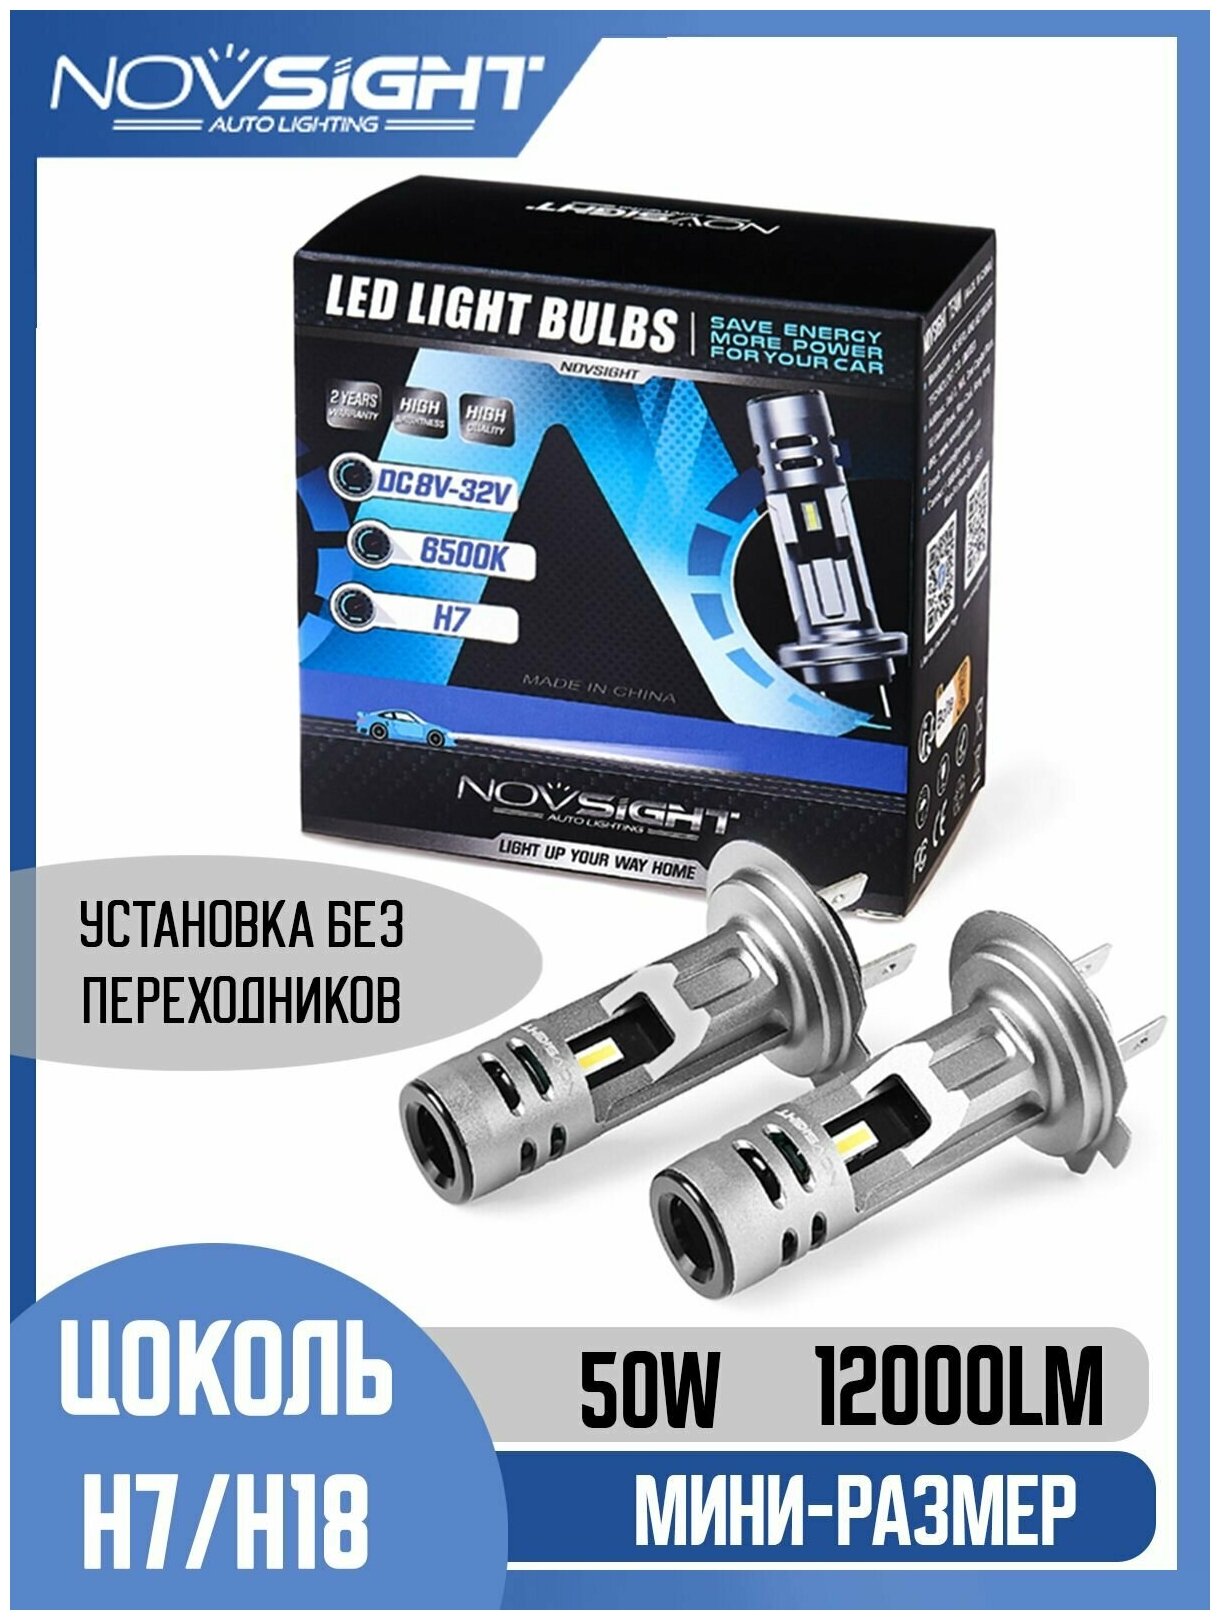 Светодиодная лампа Novsight N58 H7 цоколь PX26d 50Вт 2шт 6000К 12000Лм мини размер белый свет LED автомобильная — купить в интернет-магазине по низкой цене на Яндекс Маркете